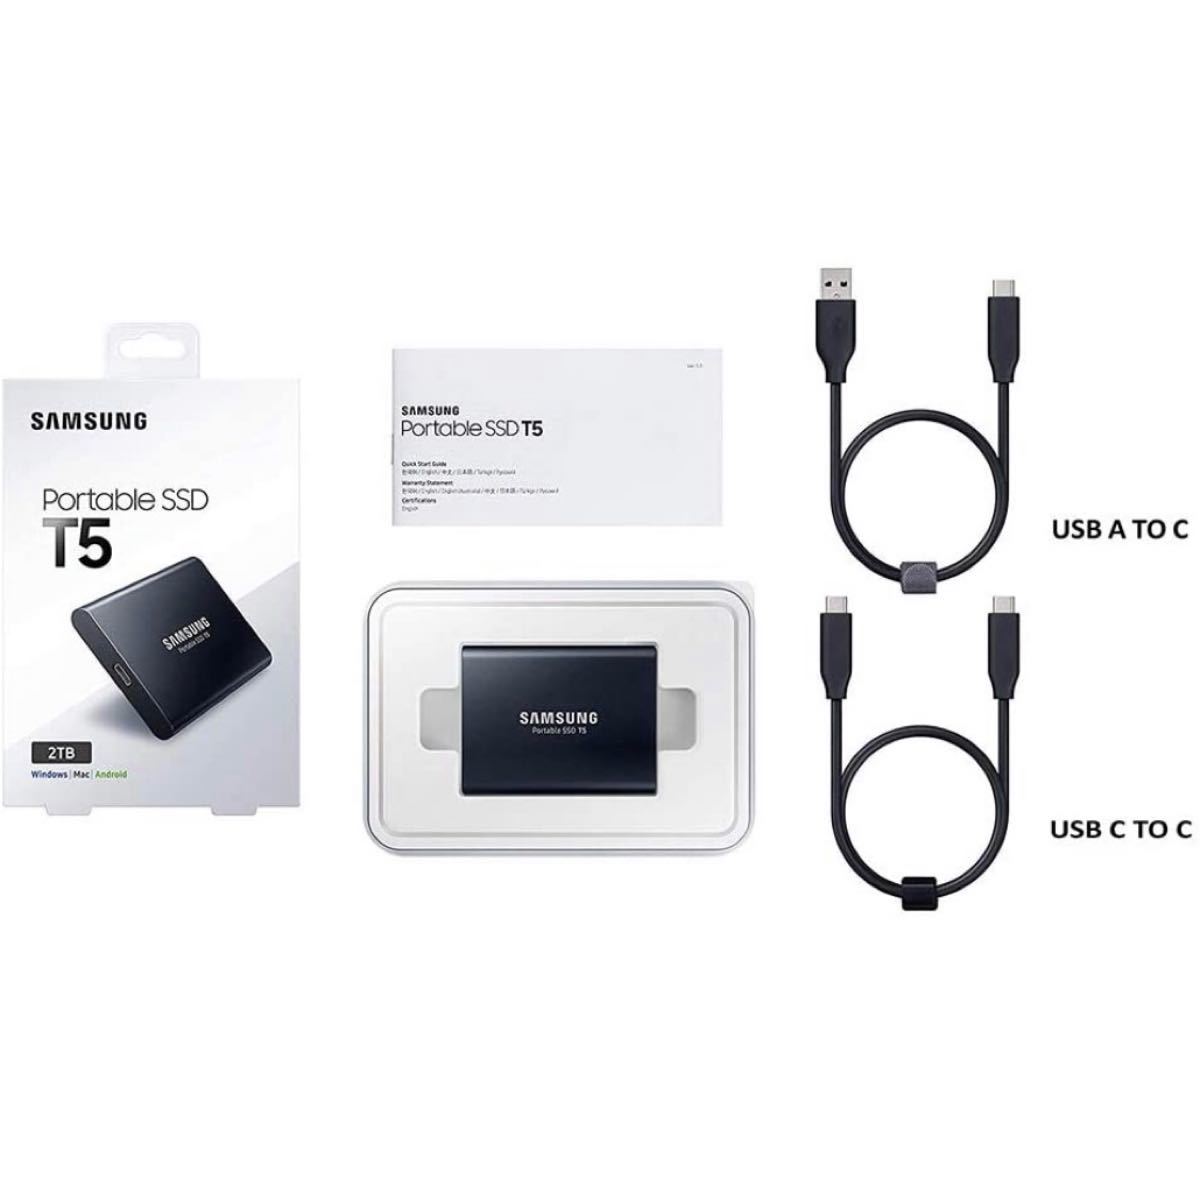 【新品・正規品】サムスン SSD 500GB T5 MU-PA500B/IT  SAMSUNG  ポータブルSSD